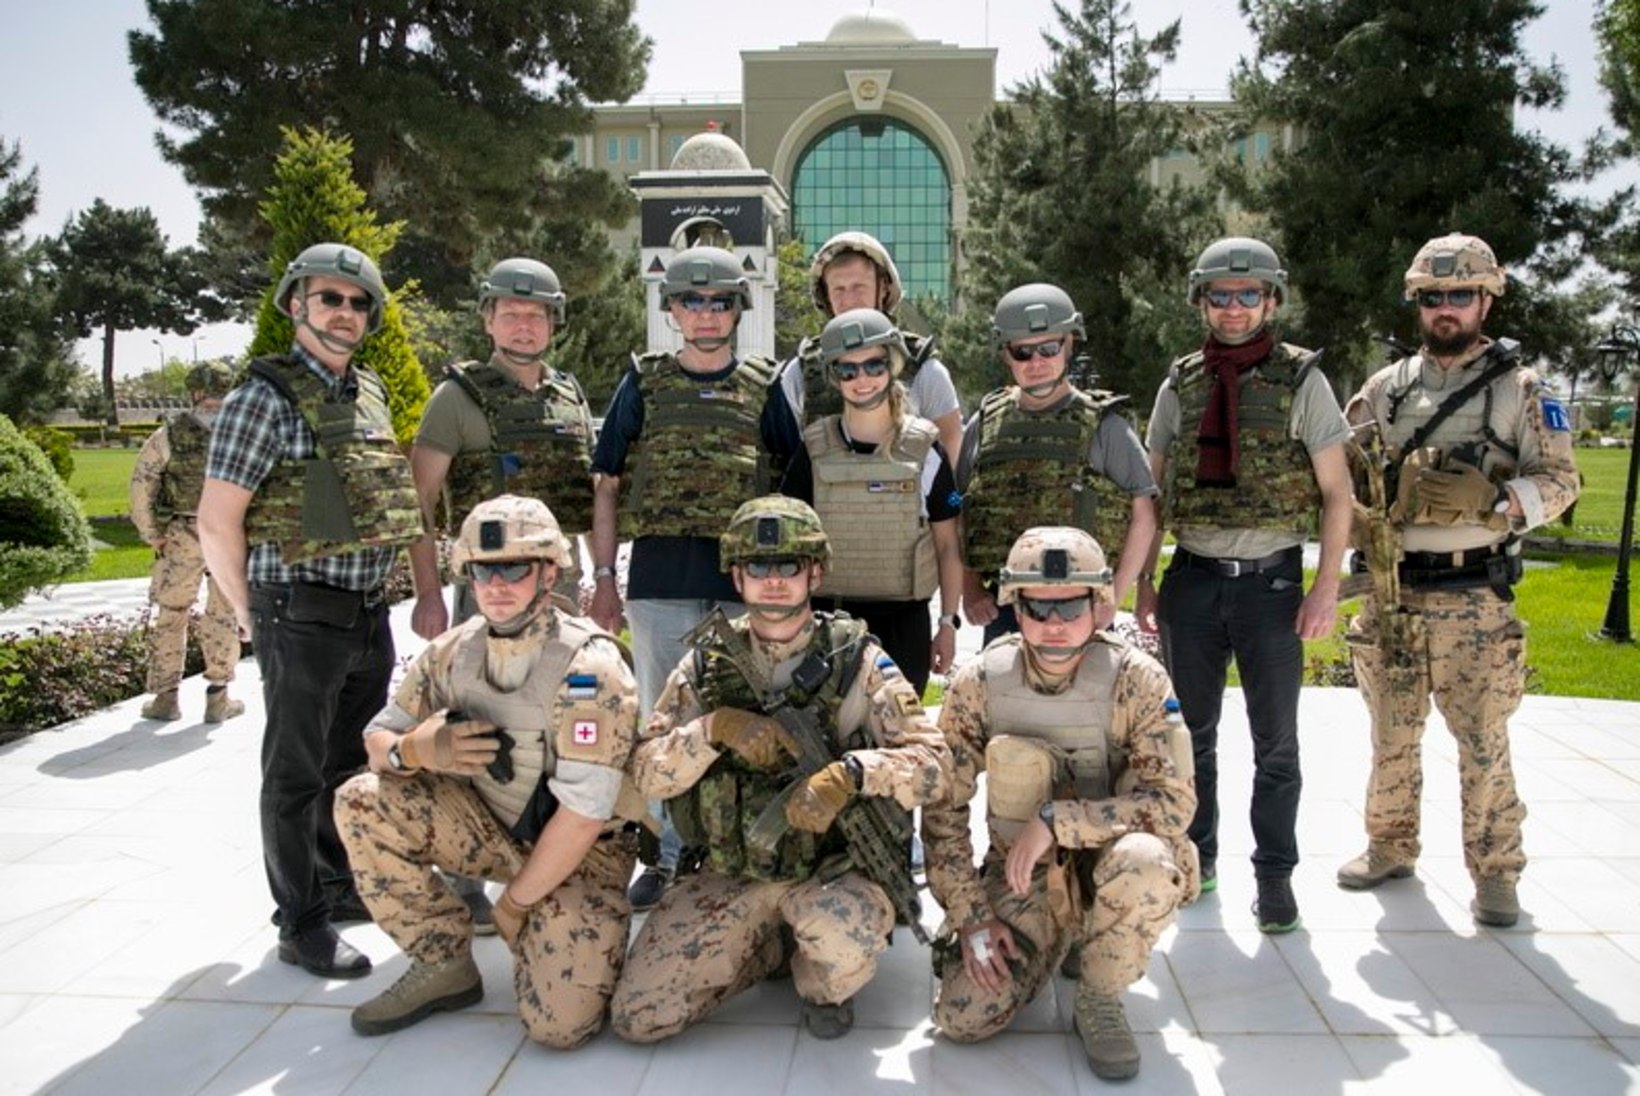 FOTOD | Nele-Liis Vaiksoo tutvus Afganistanis Eesti sõdurite teenistusega: siin viibides õpib hindama seda, kus ma ise elan